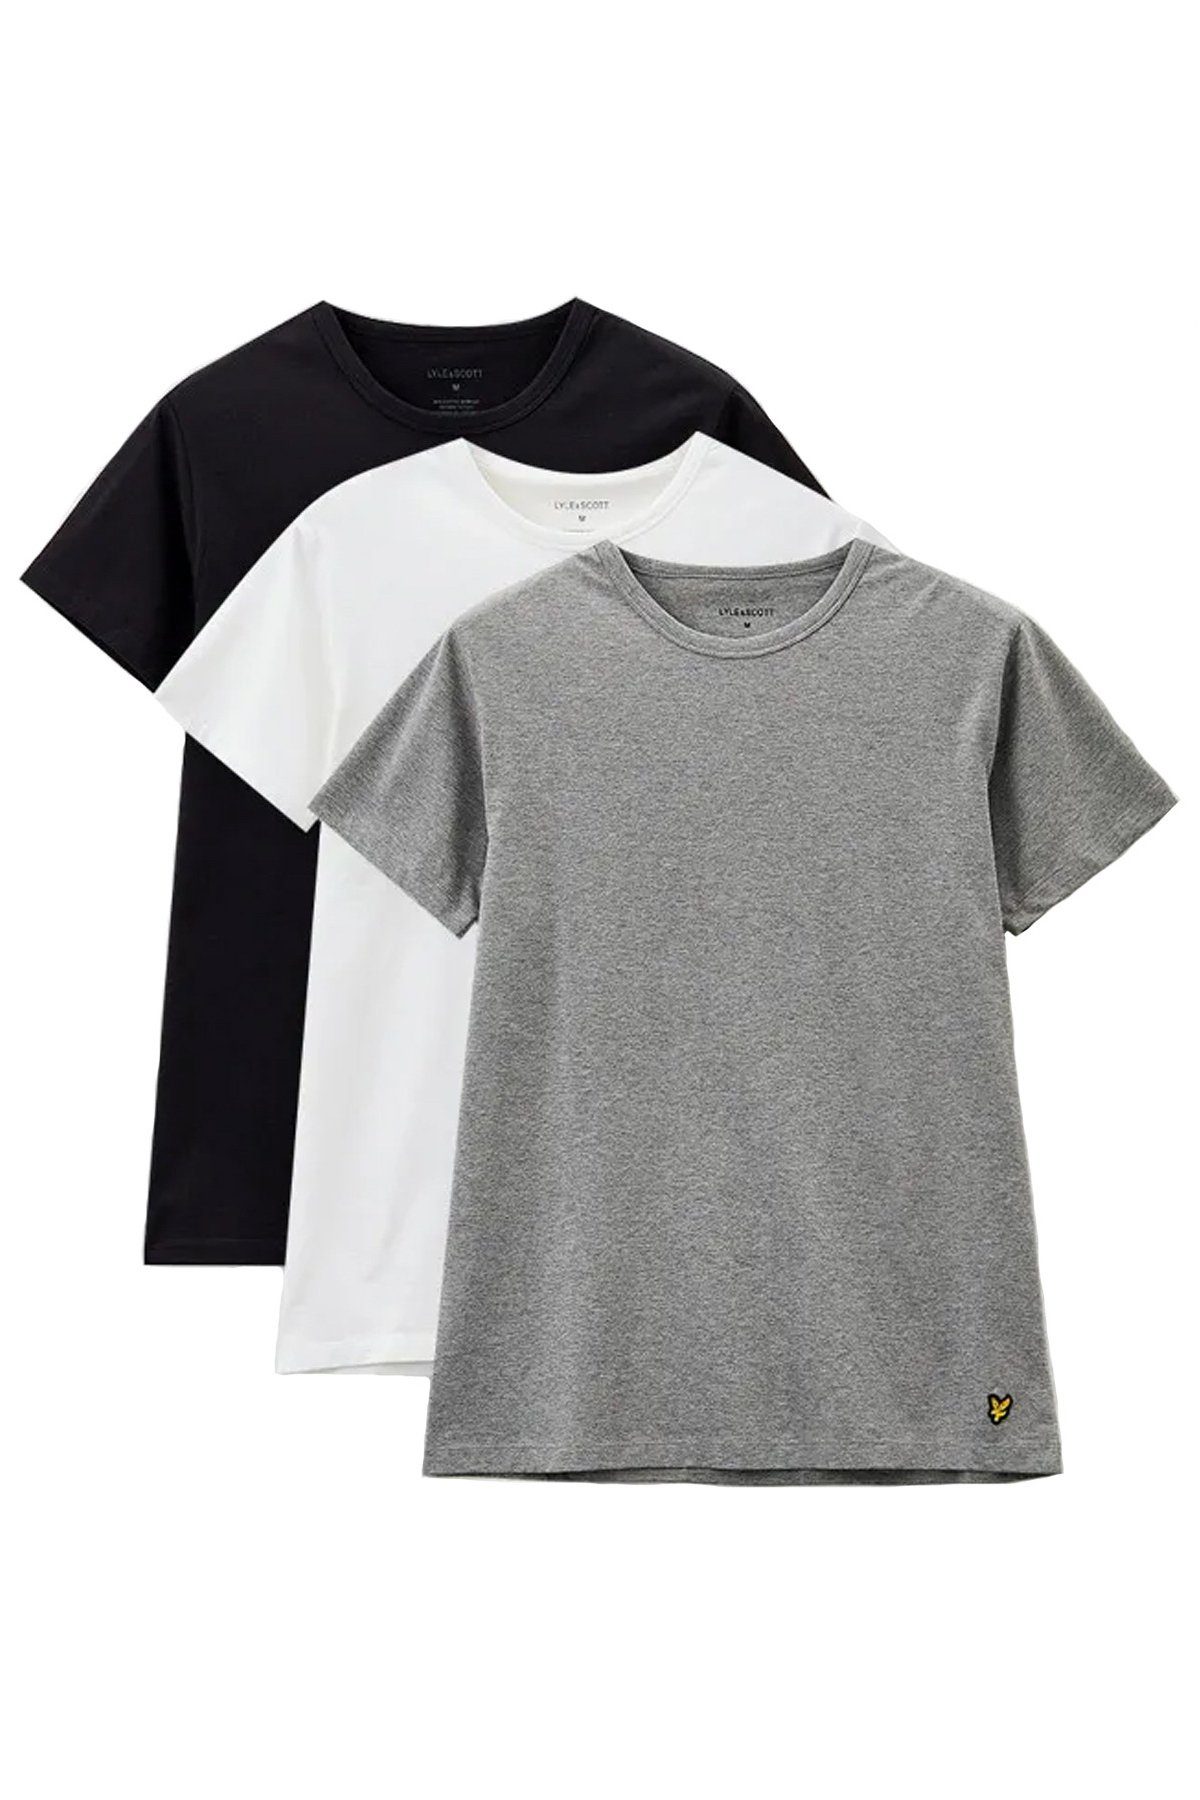 Tiefschwarz/ Mittelgrau Weiß & Lyle T-Shirt Basic Farben (3Er-Set) Scott meliert/